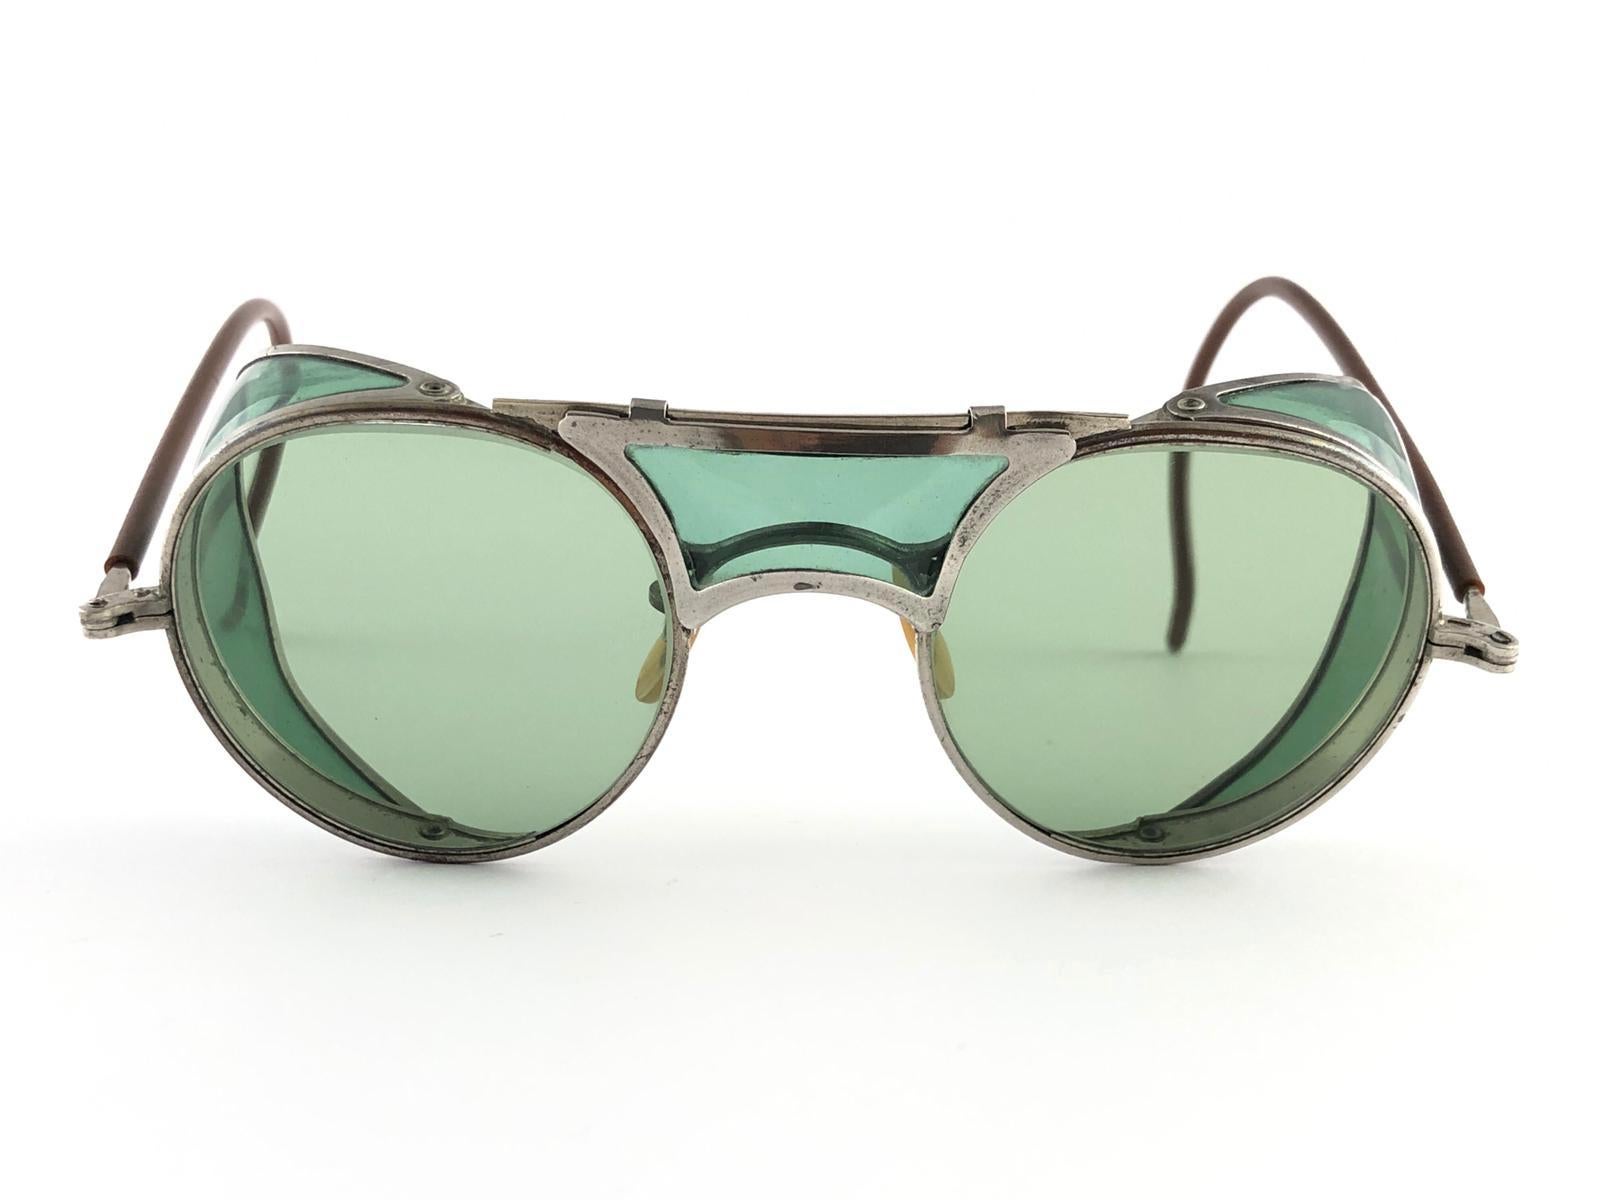 Hervorragender Artikel! 1950's Bausch & Lomb Schutzbrille.  
Klappbare grüne und silberne Metallbügel und speziell umwickelte Bügel.  Mint echte grüne runde Linsen mit leichten Verschleiß auf sie. 
Bitte beachten Sie, dass dieser Artikel fast 70